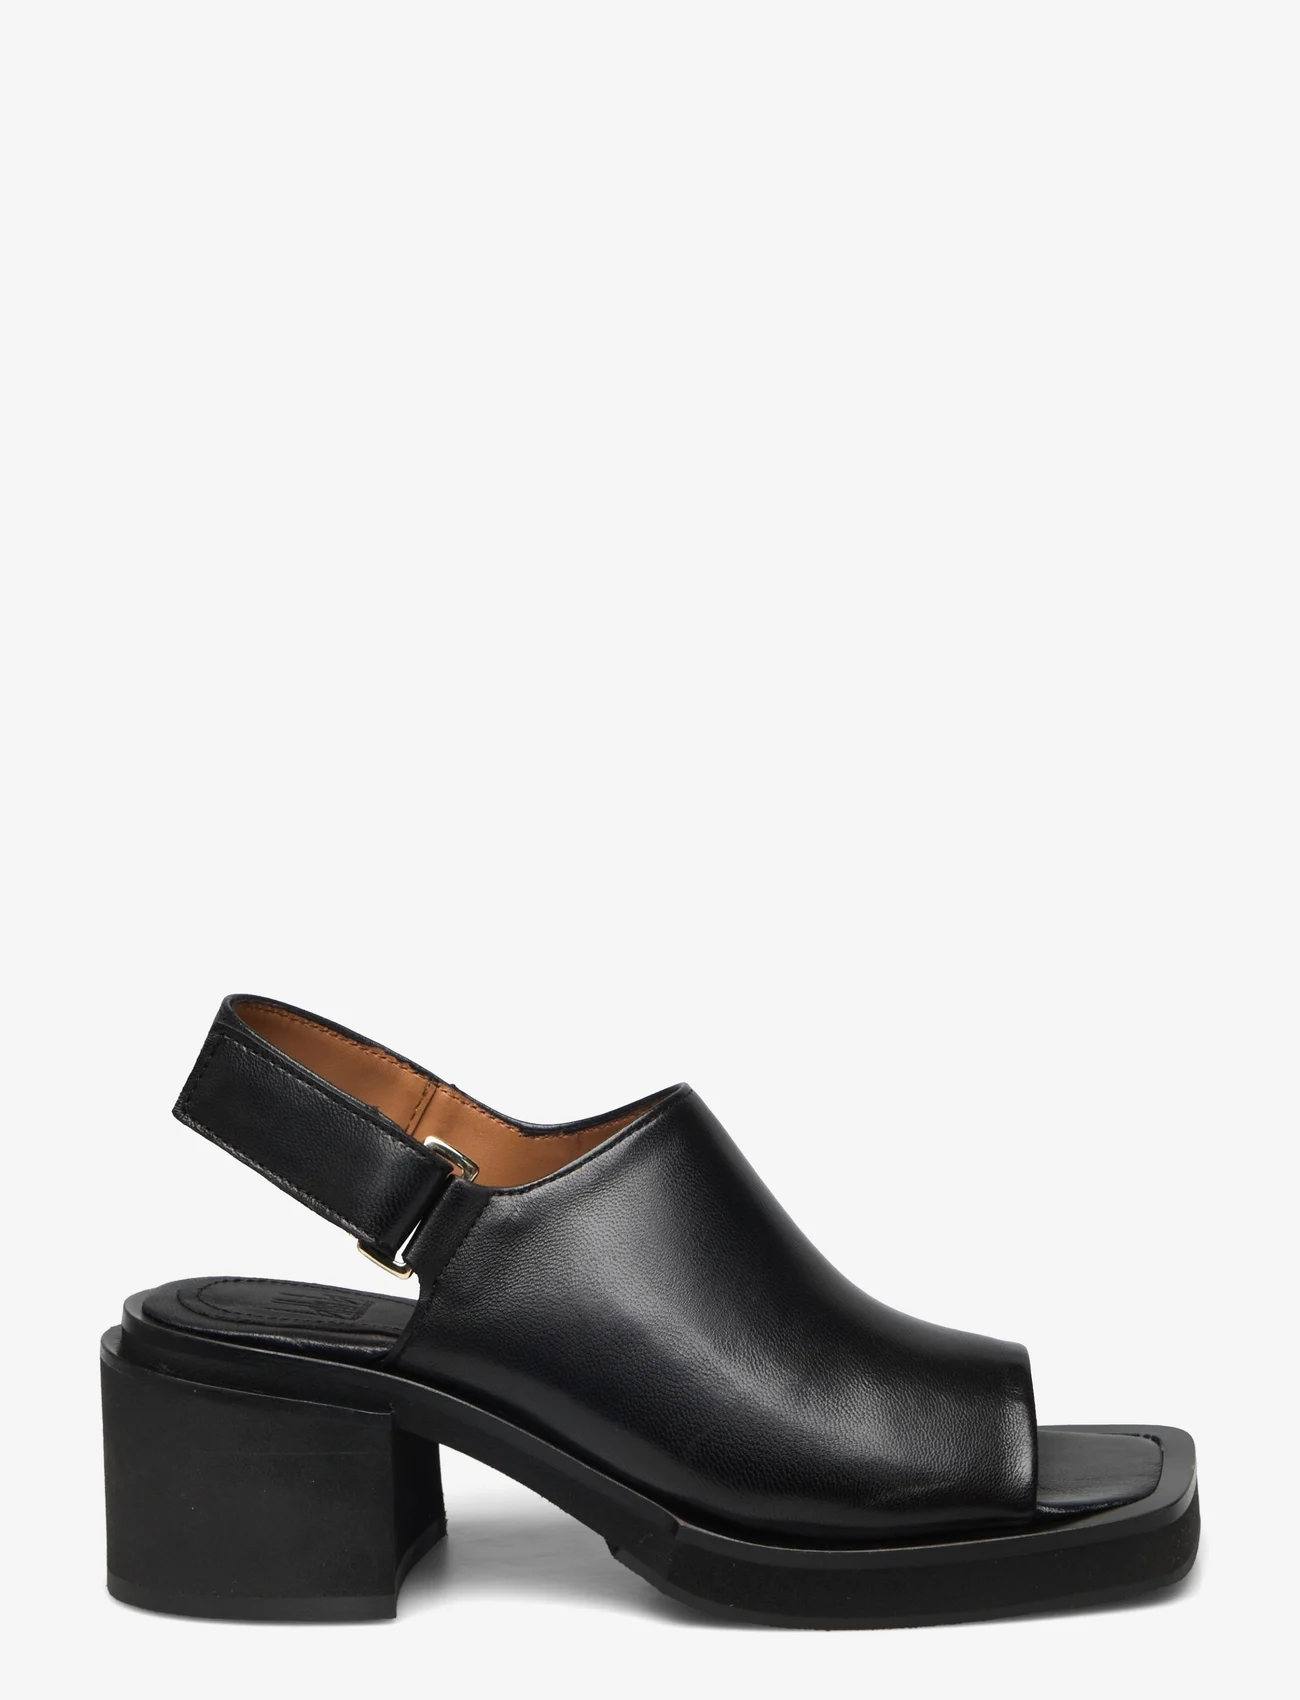 Billi Bi - Sandals - heeled sandals - black nappa - 1